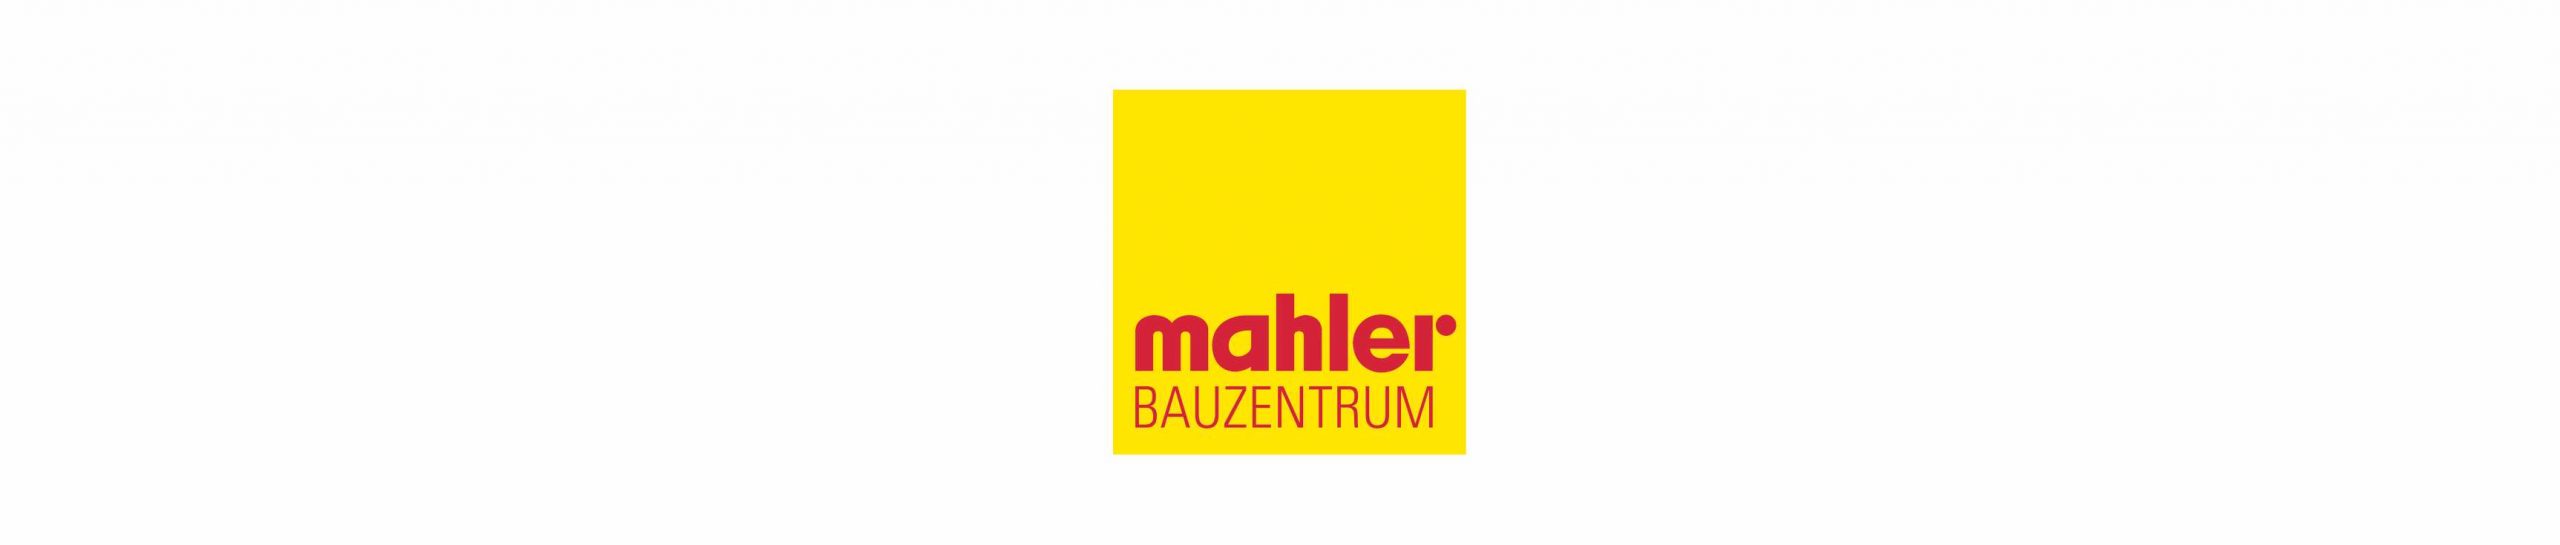 Bauwaren Mahler GmbH & Co. KG - Augsburg